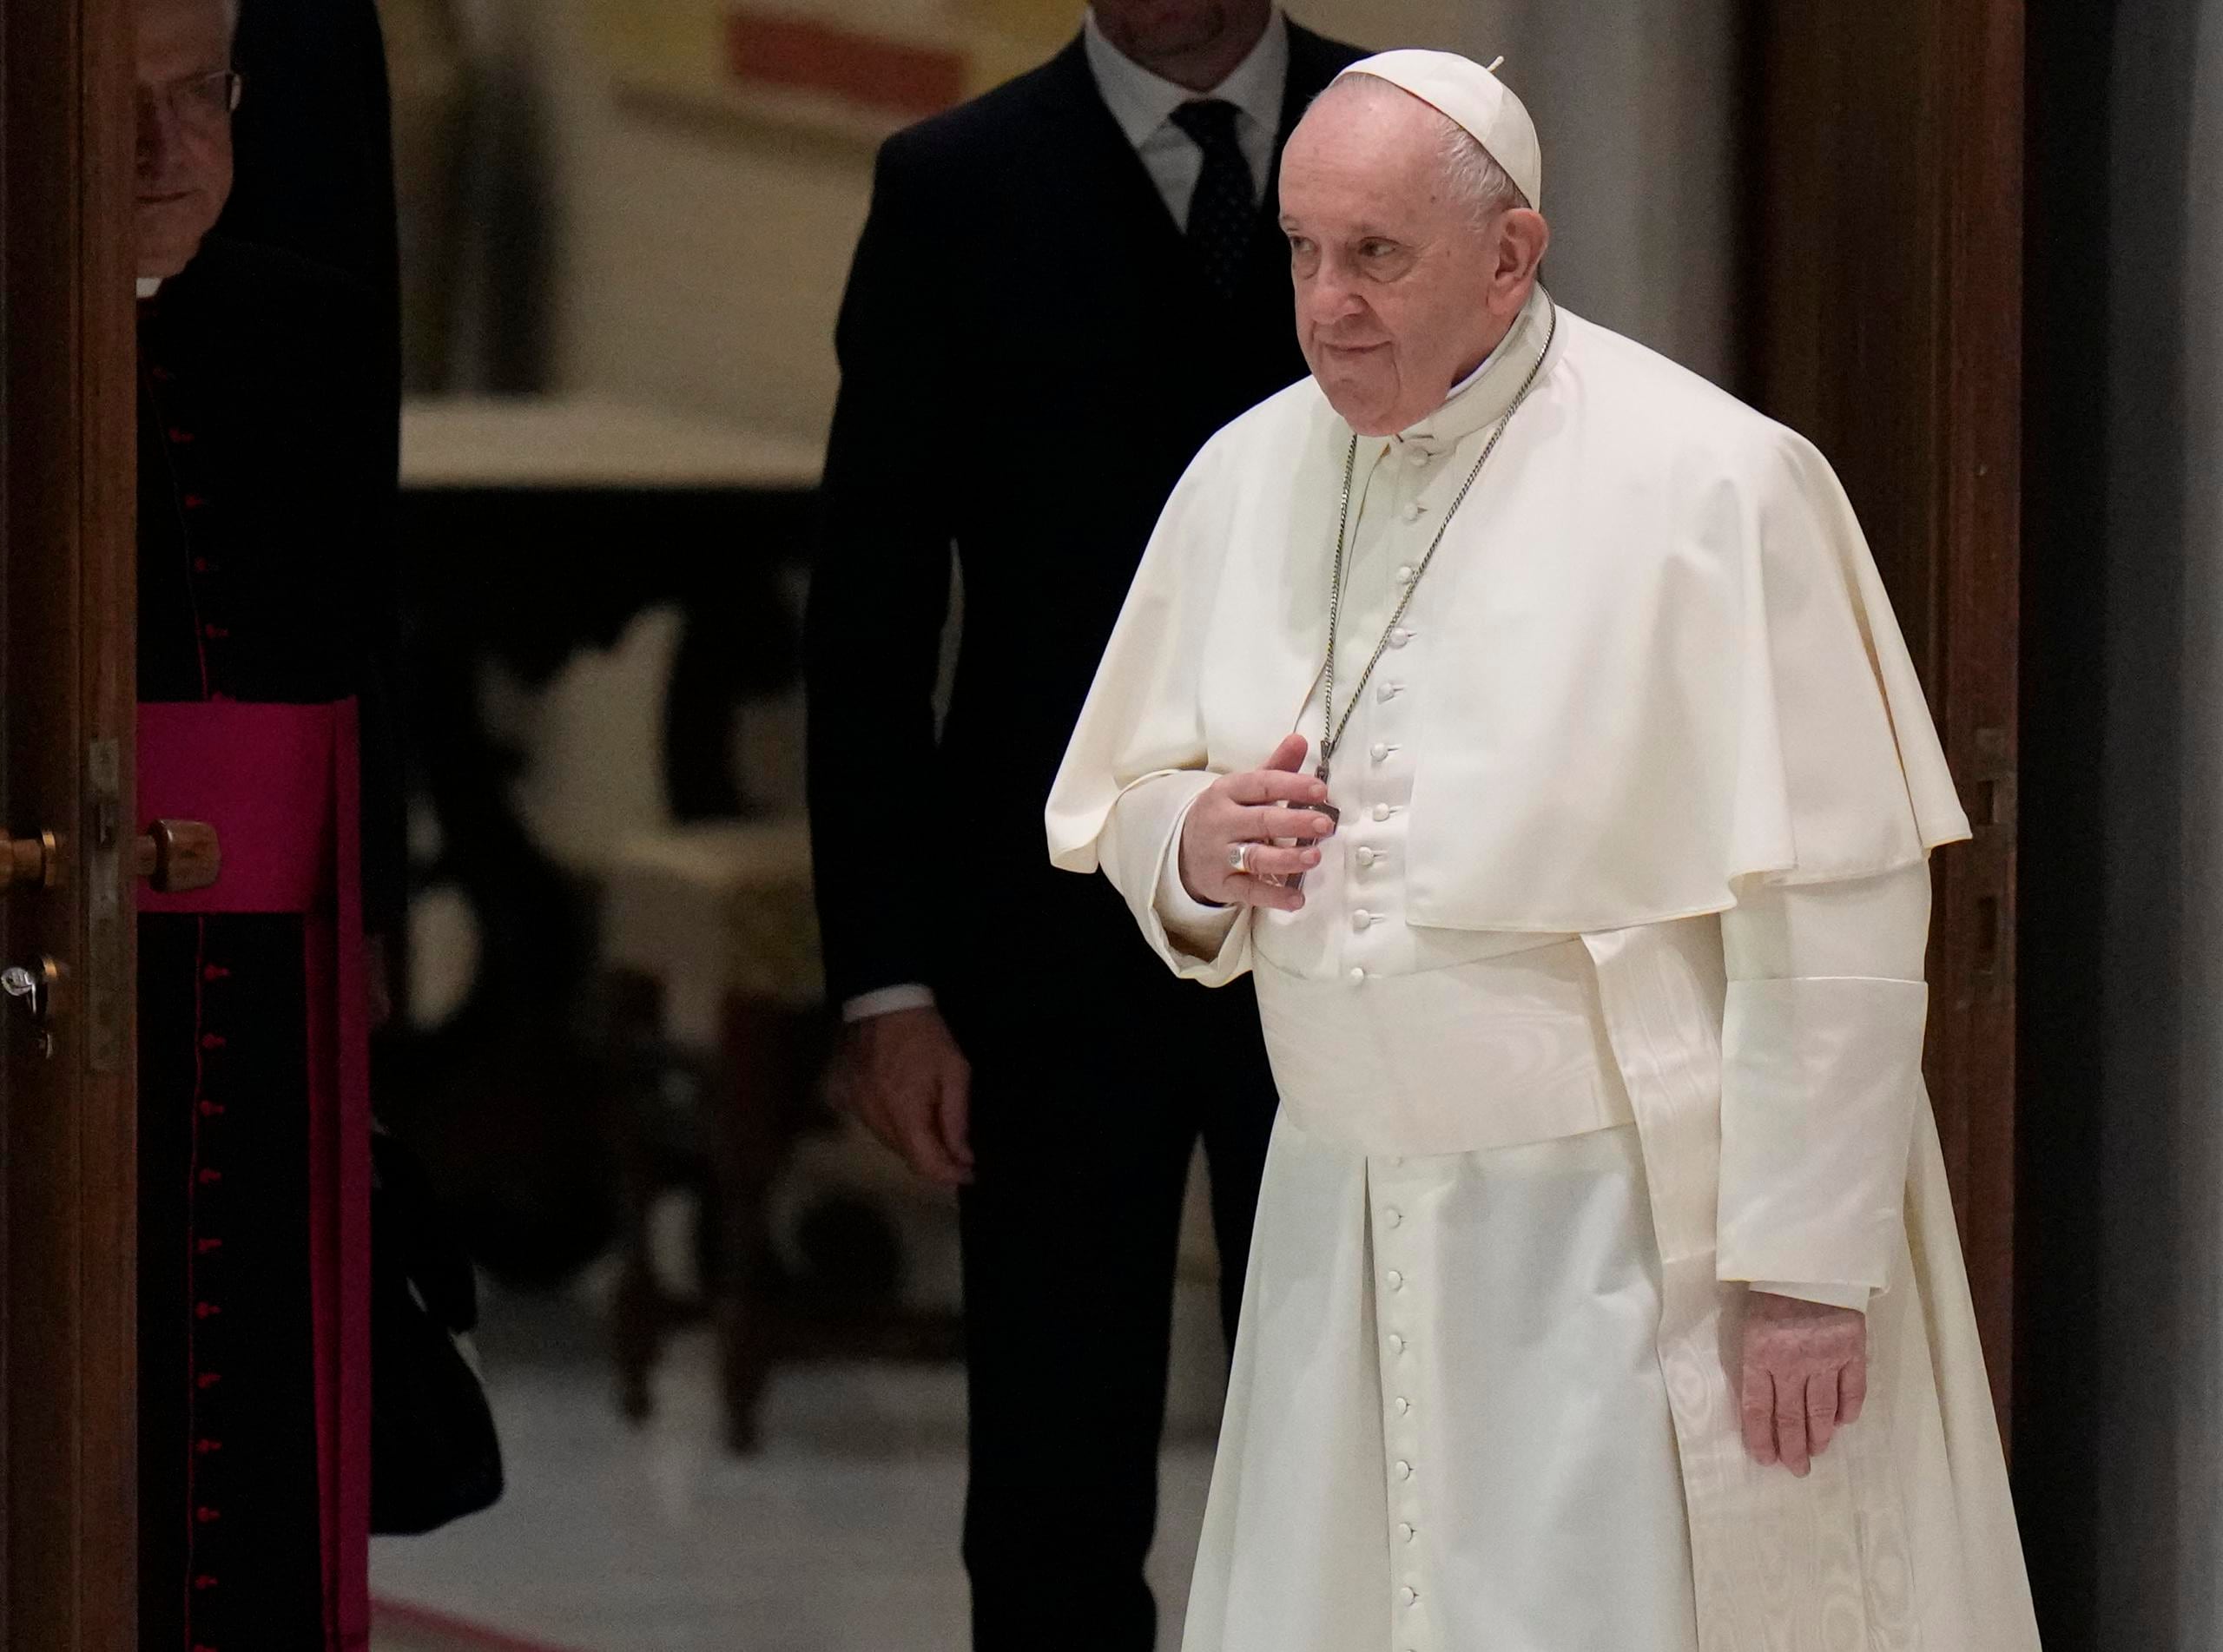 El papa Francisco llega a su audiencia general semanal, en el salón Pablo VI, en el Vaticano, el 26 de enero de 2022.